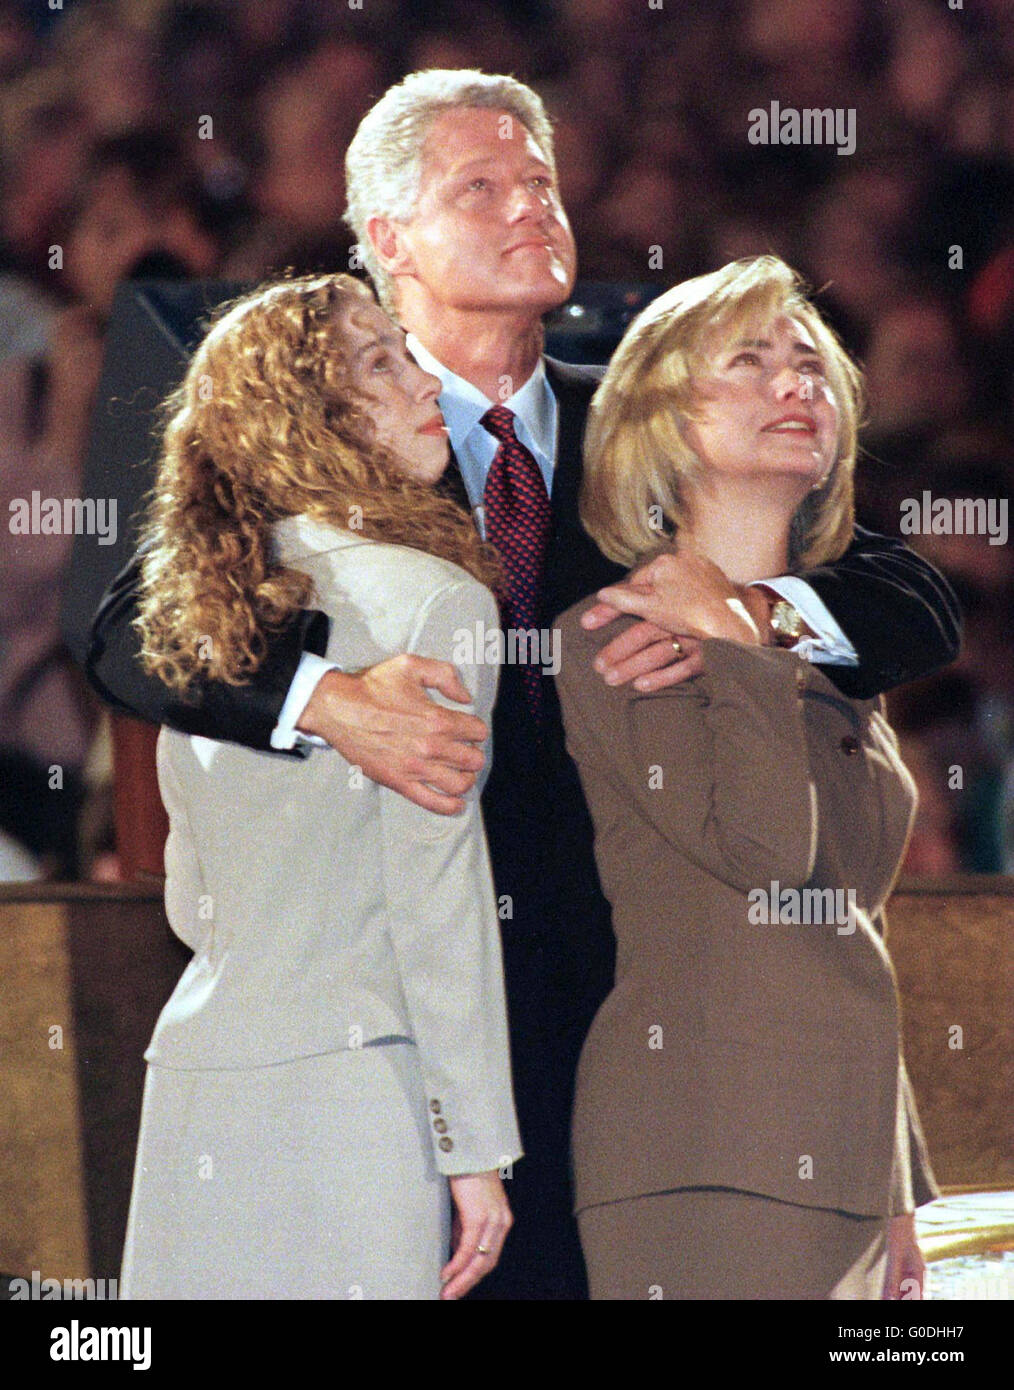 US-Präsident Bill Clinton mit der First Lady Hillary Clinton und ihre Tochter Chelsea sehen auf einer Großleinwand in Little Rock, Arkansas, die Endergebnisse der Wahlen von November 1996, die brachte ihm eine zweite Amtszeit als Präsident der Vereinigten Staaten. Stockfoto